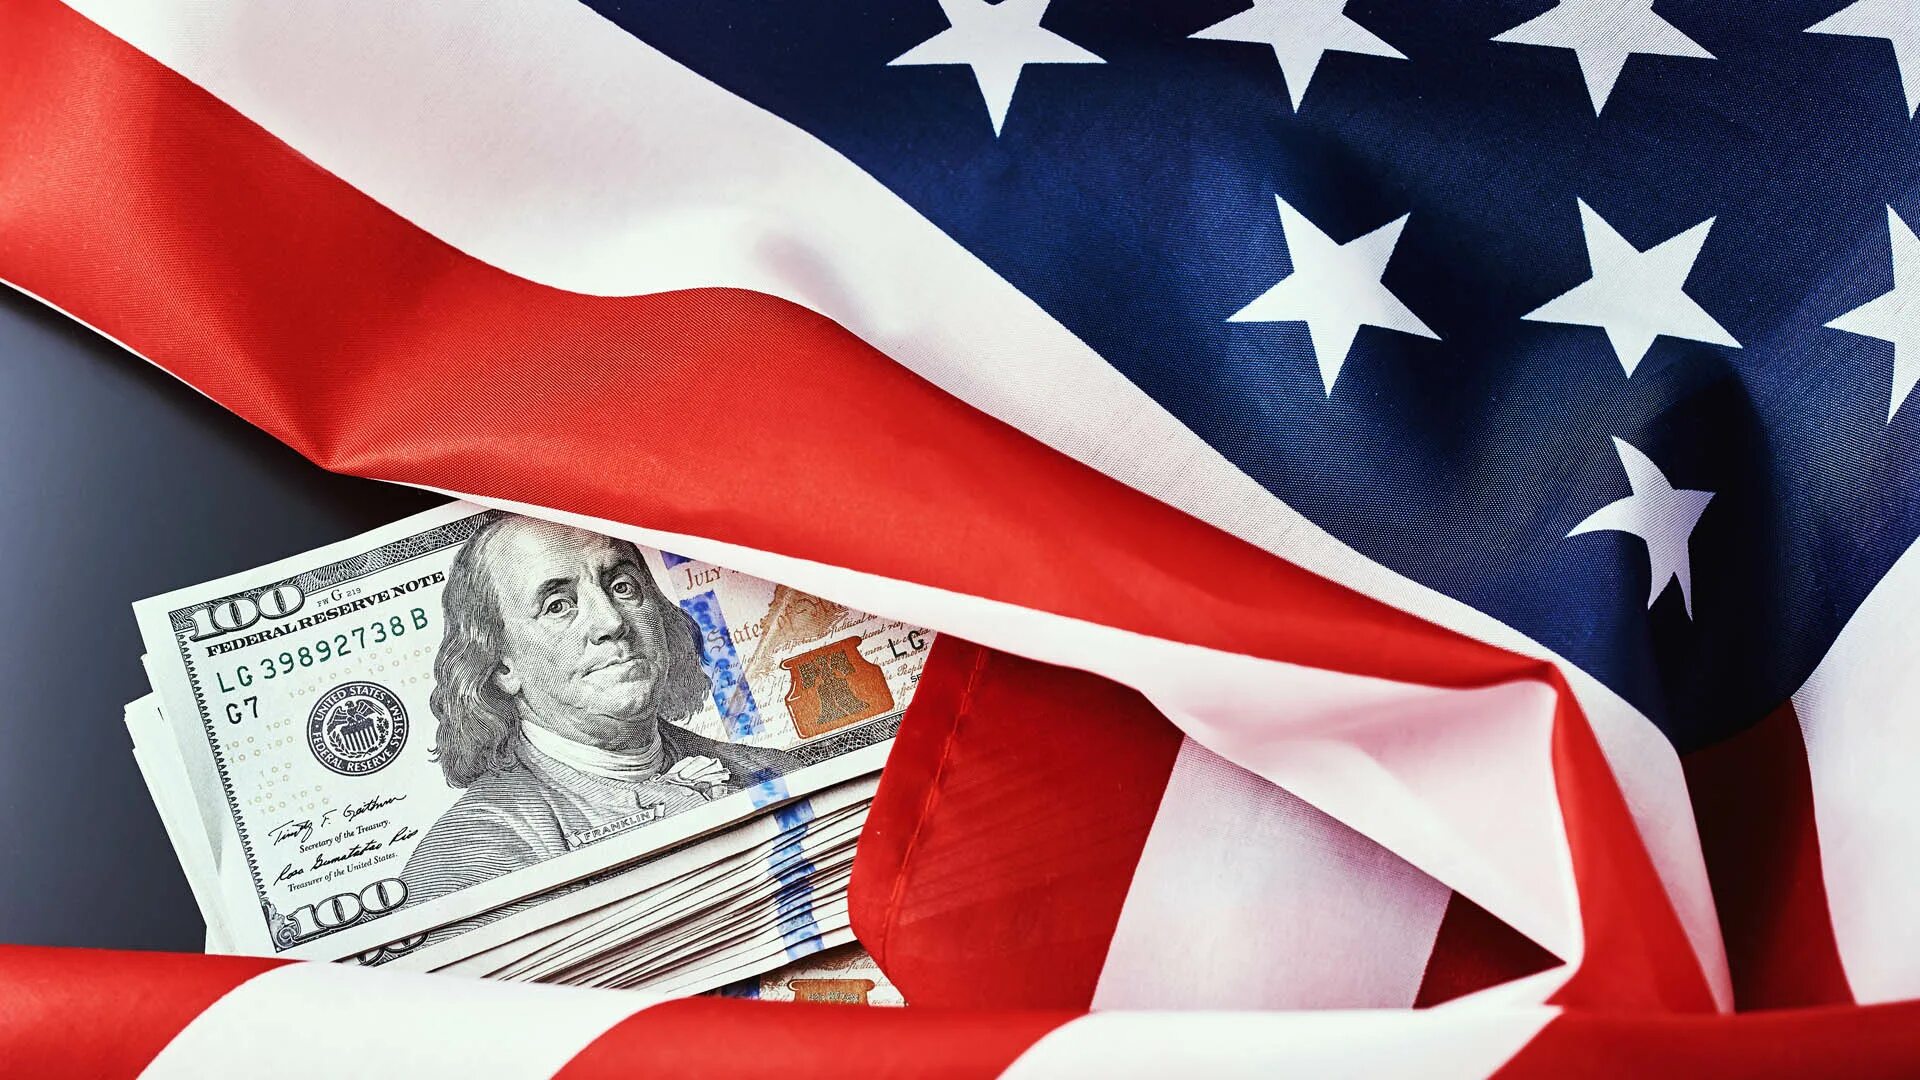 Доллар США И флаг. Долар и американский флаг. Доллар США на фоне флага. Флаг США И деньги.